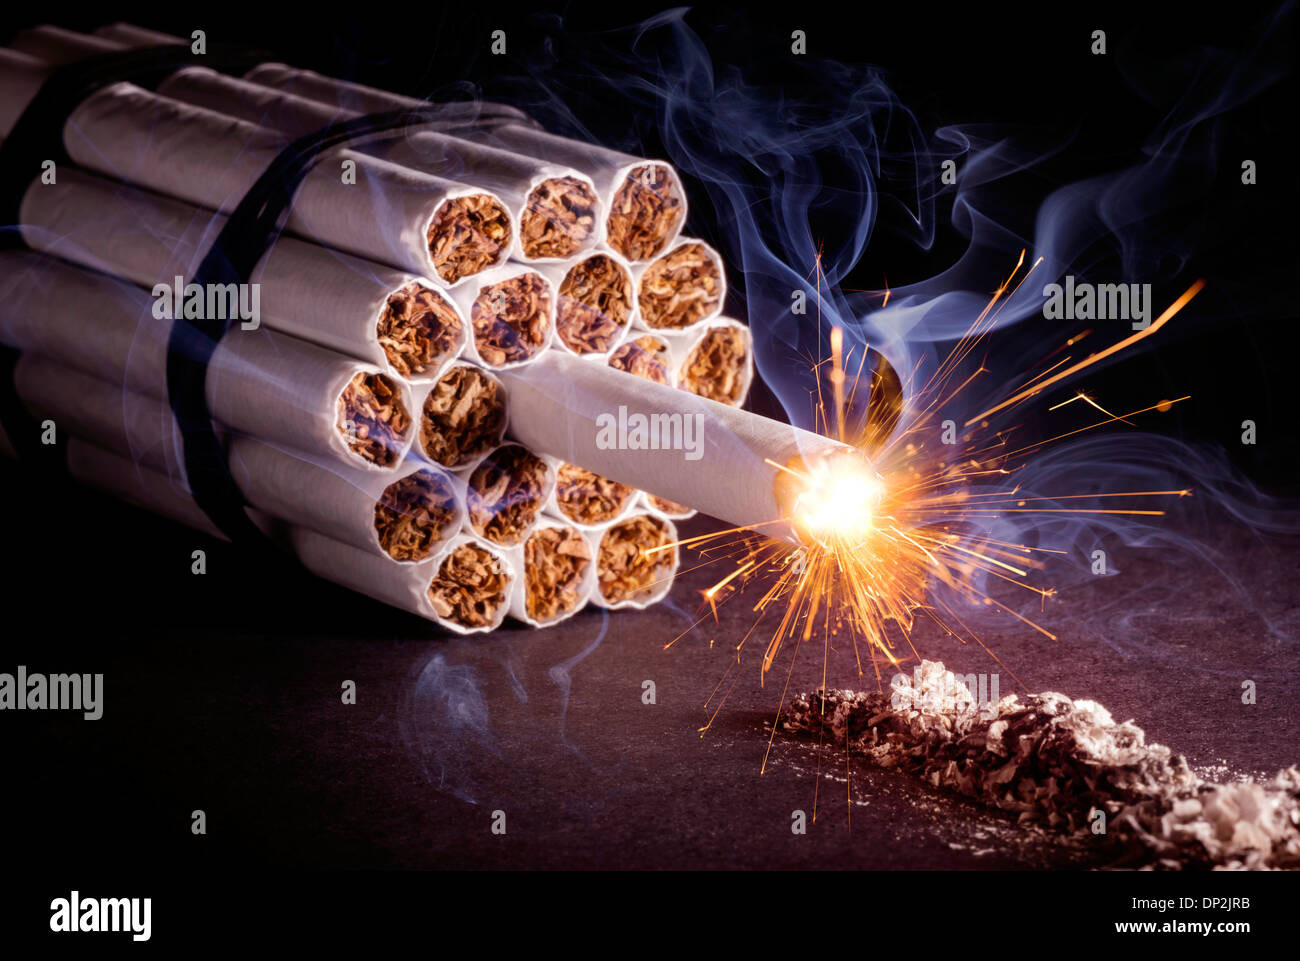 Gefahren des Rauchens, konzeptionelle Bild Stockfoto